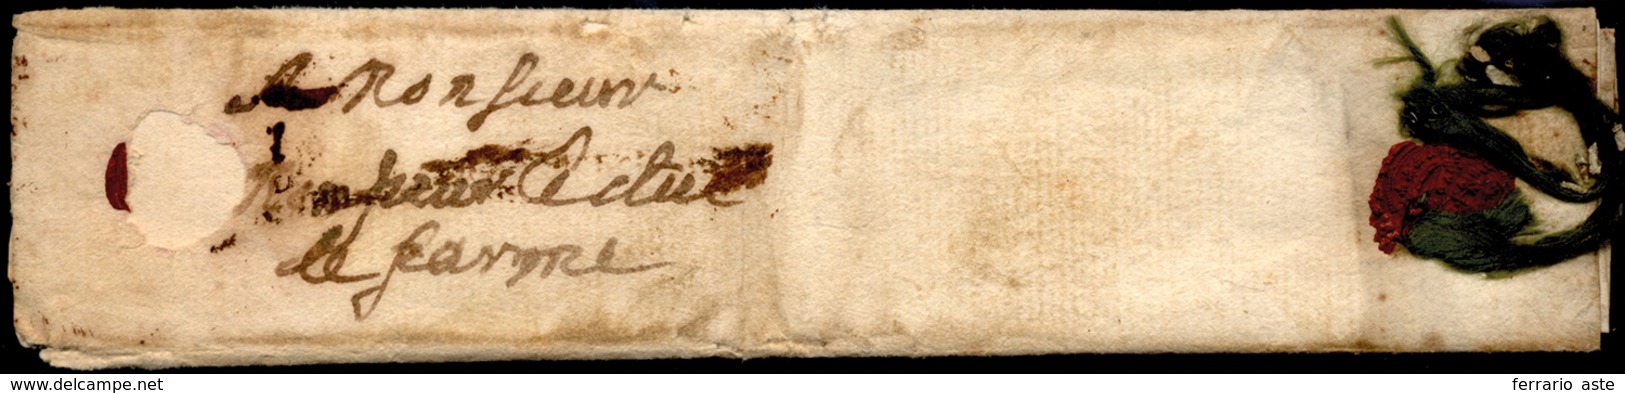 1650 Ca. - Minilettera, Dimensioni 8 X 3,5 Cm, Da Orsay (?) Con Sigillo Rosso In Ceralacca E Nastri ... - 1. ...-1850 Vorphilatelie